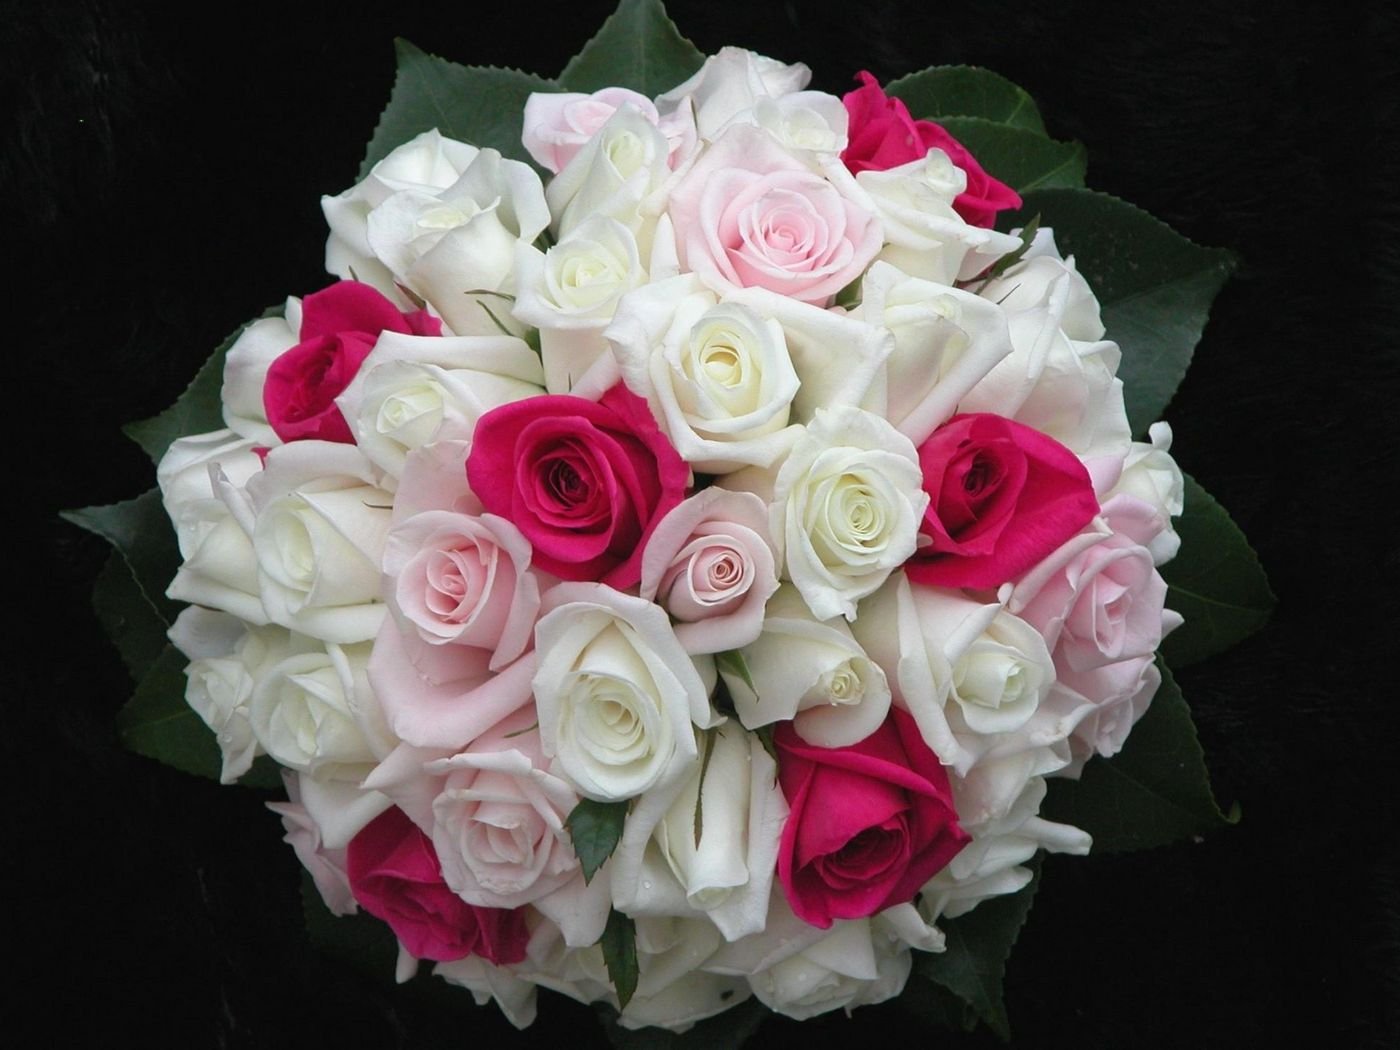 самые красивые букеты роз фото